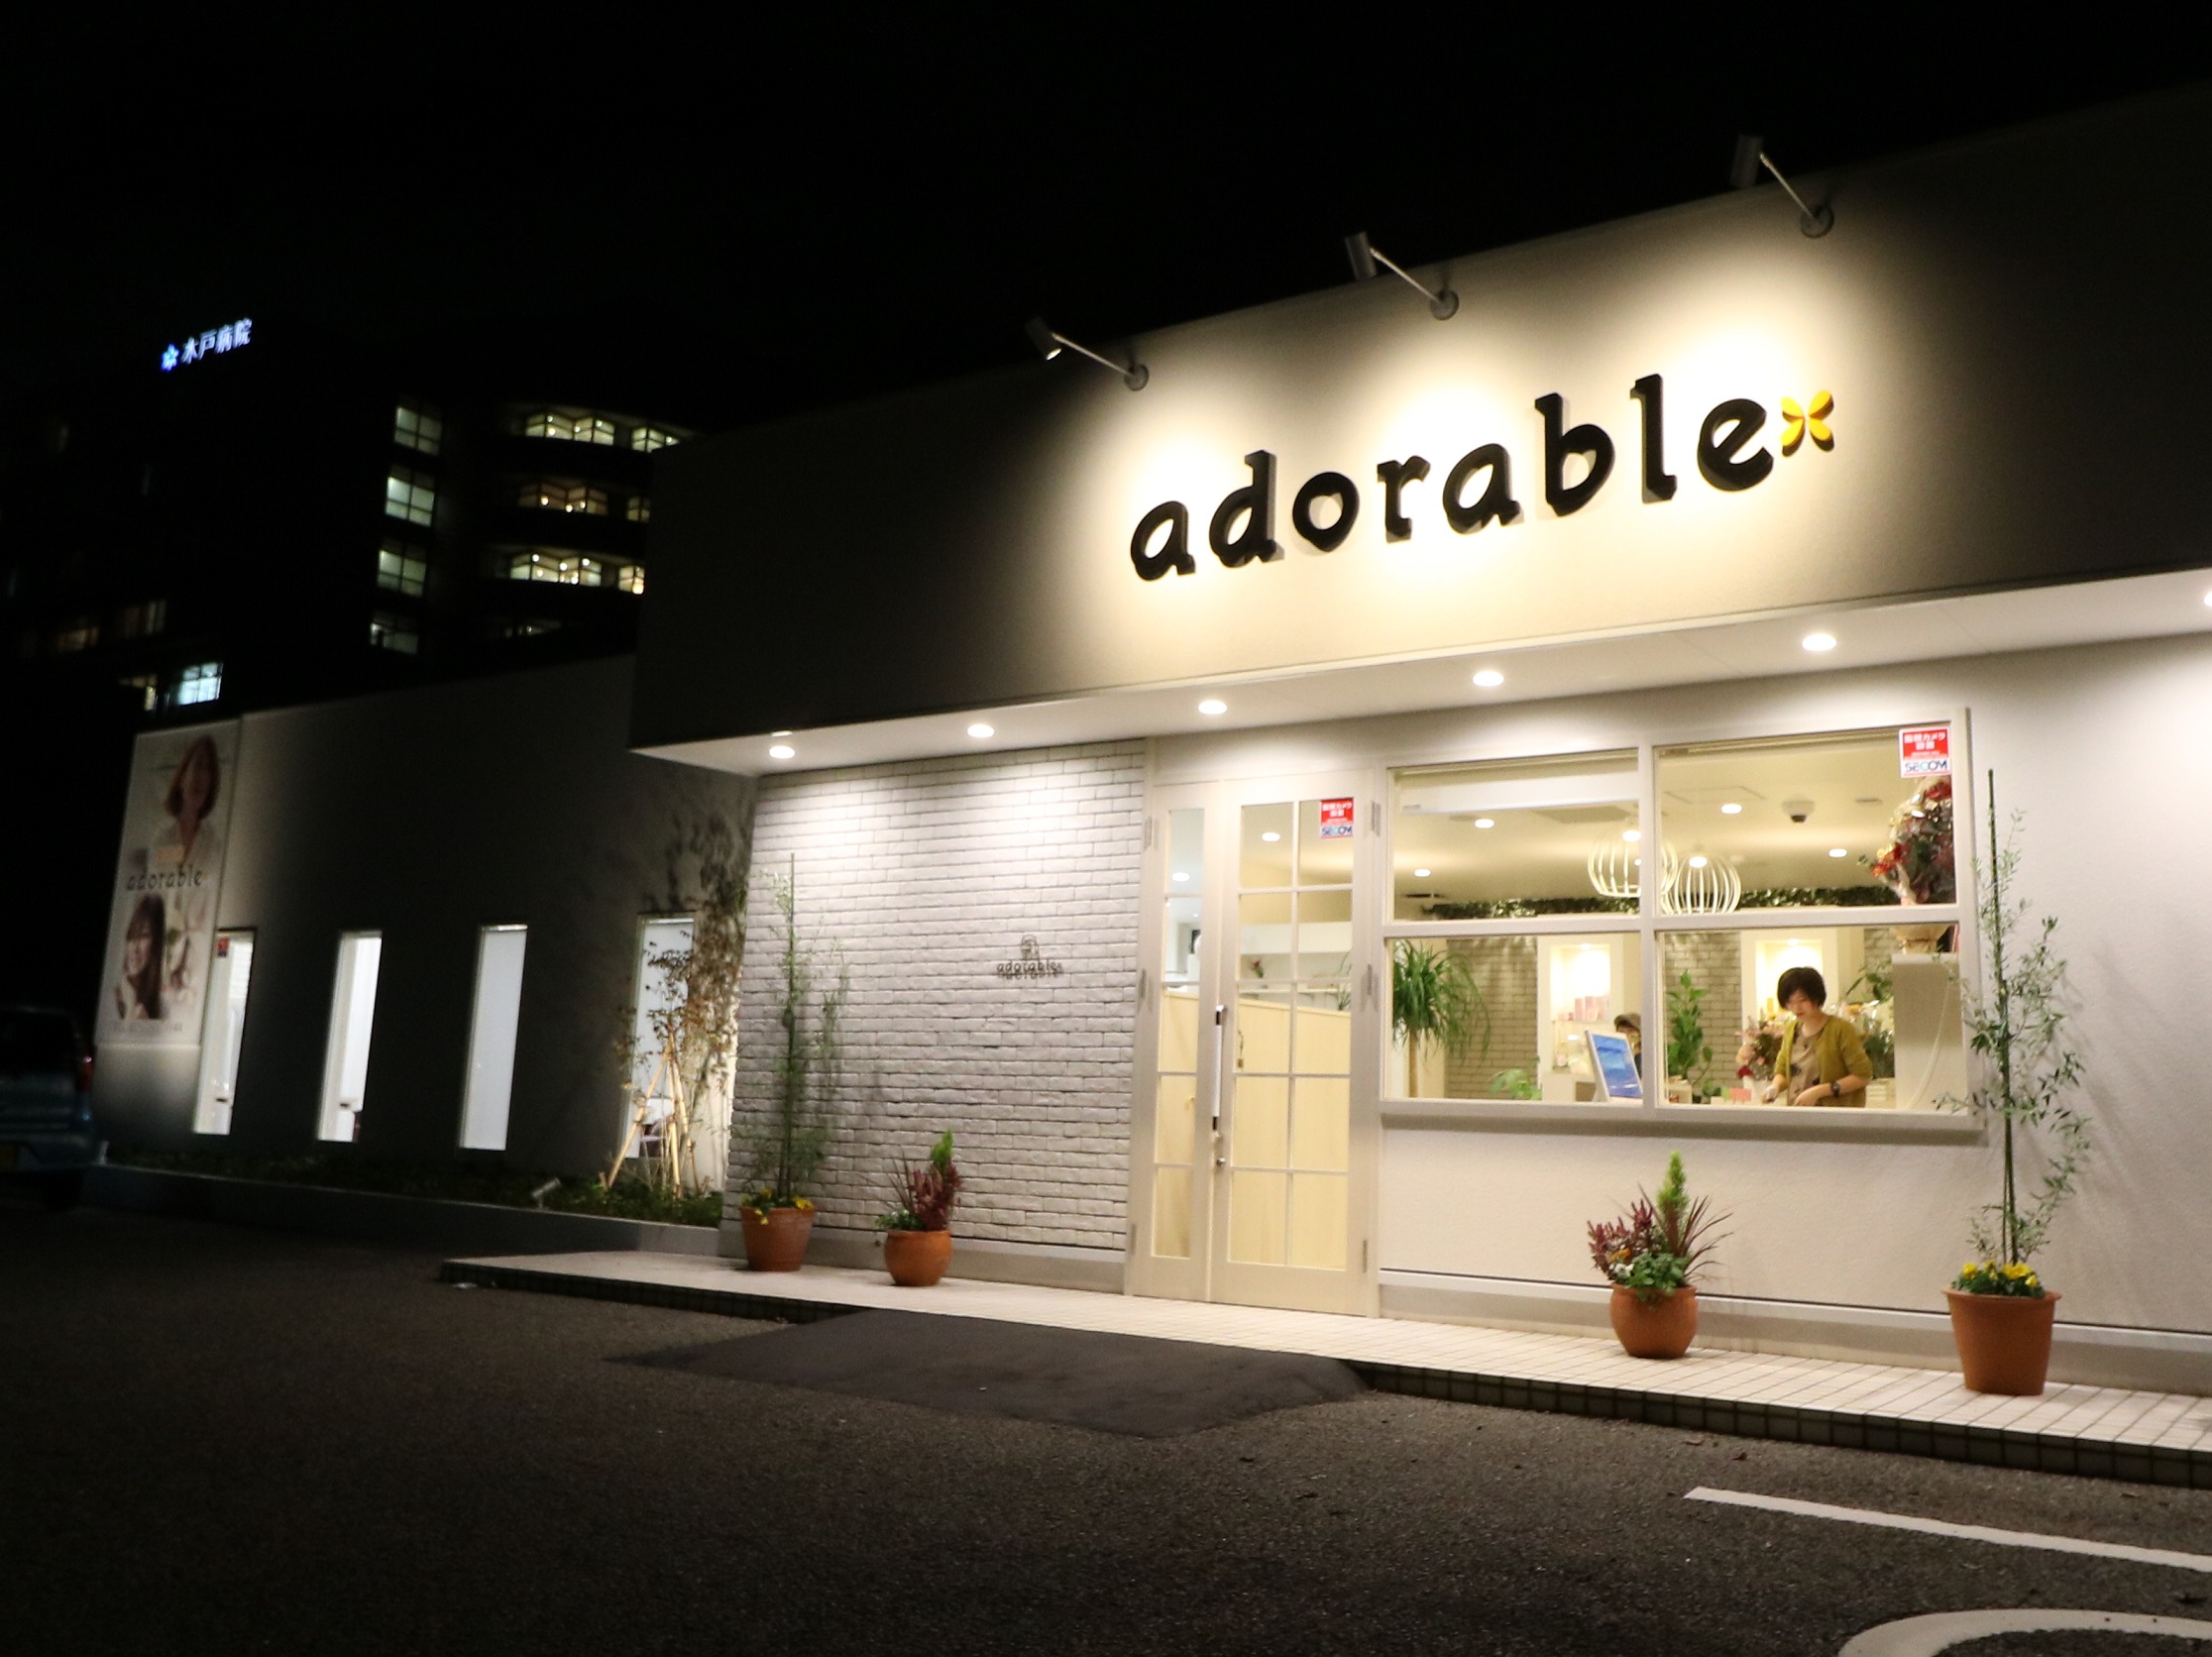 美容室 Adorable アドラーブル はなみずき店 株式会社ツナグdirection 公式ホームページ